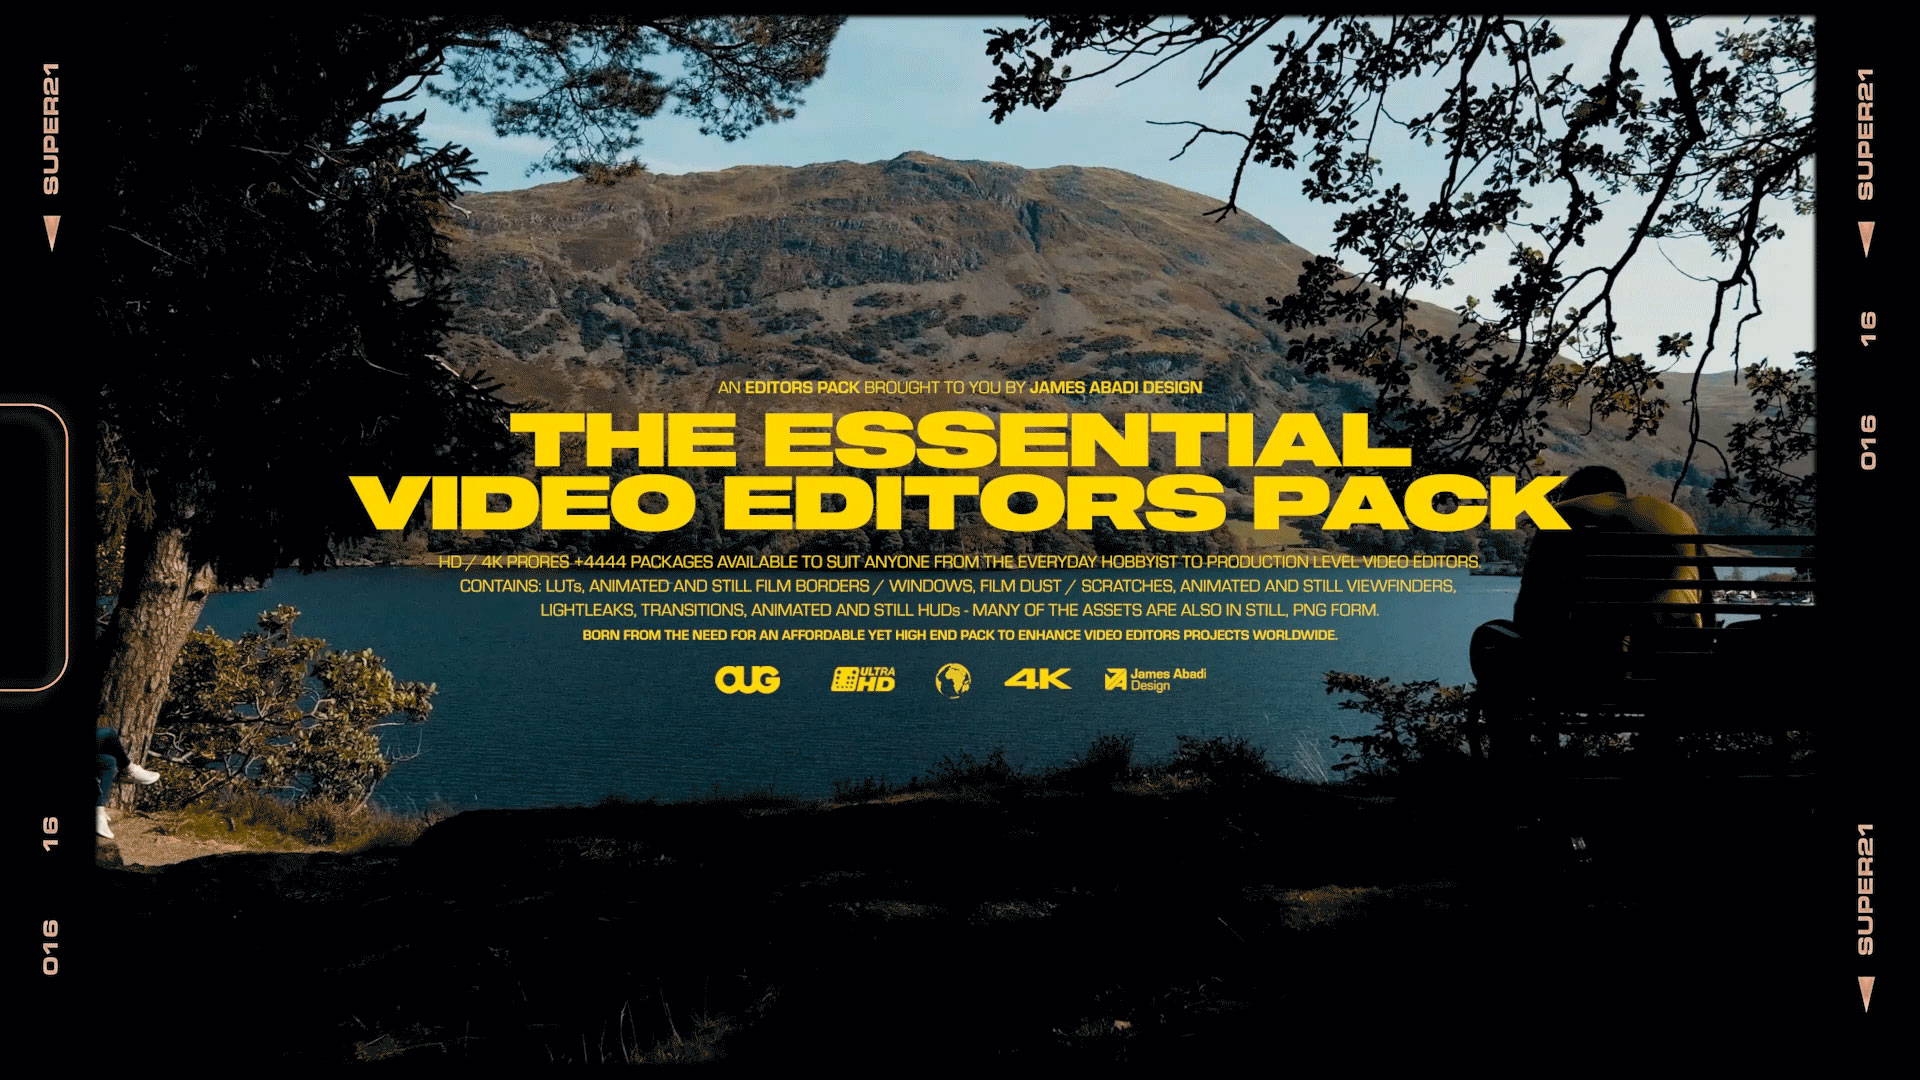 65+复古电影画框胶片动画静态取景器灰尘划痕电影级视频素材 James Abadi The Essential Video Editors Pack 影视音频 第1张